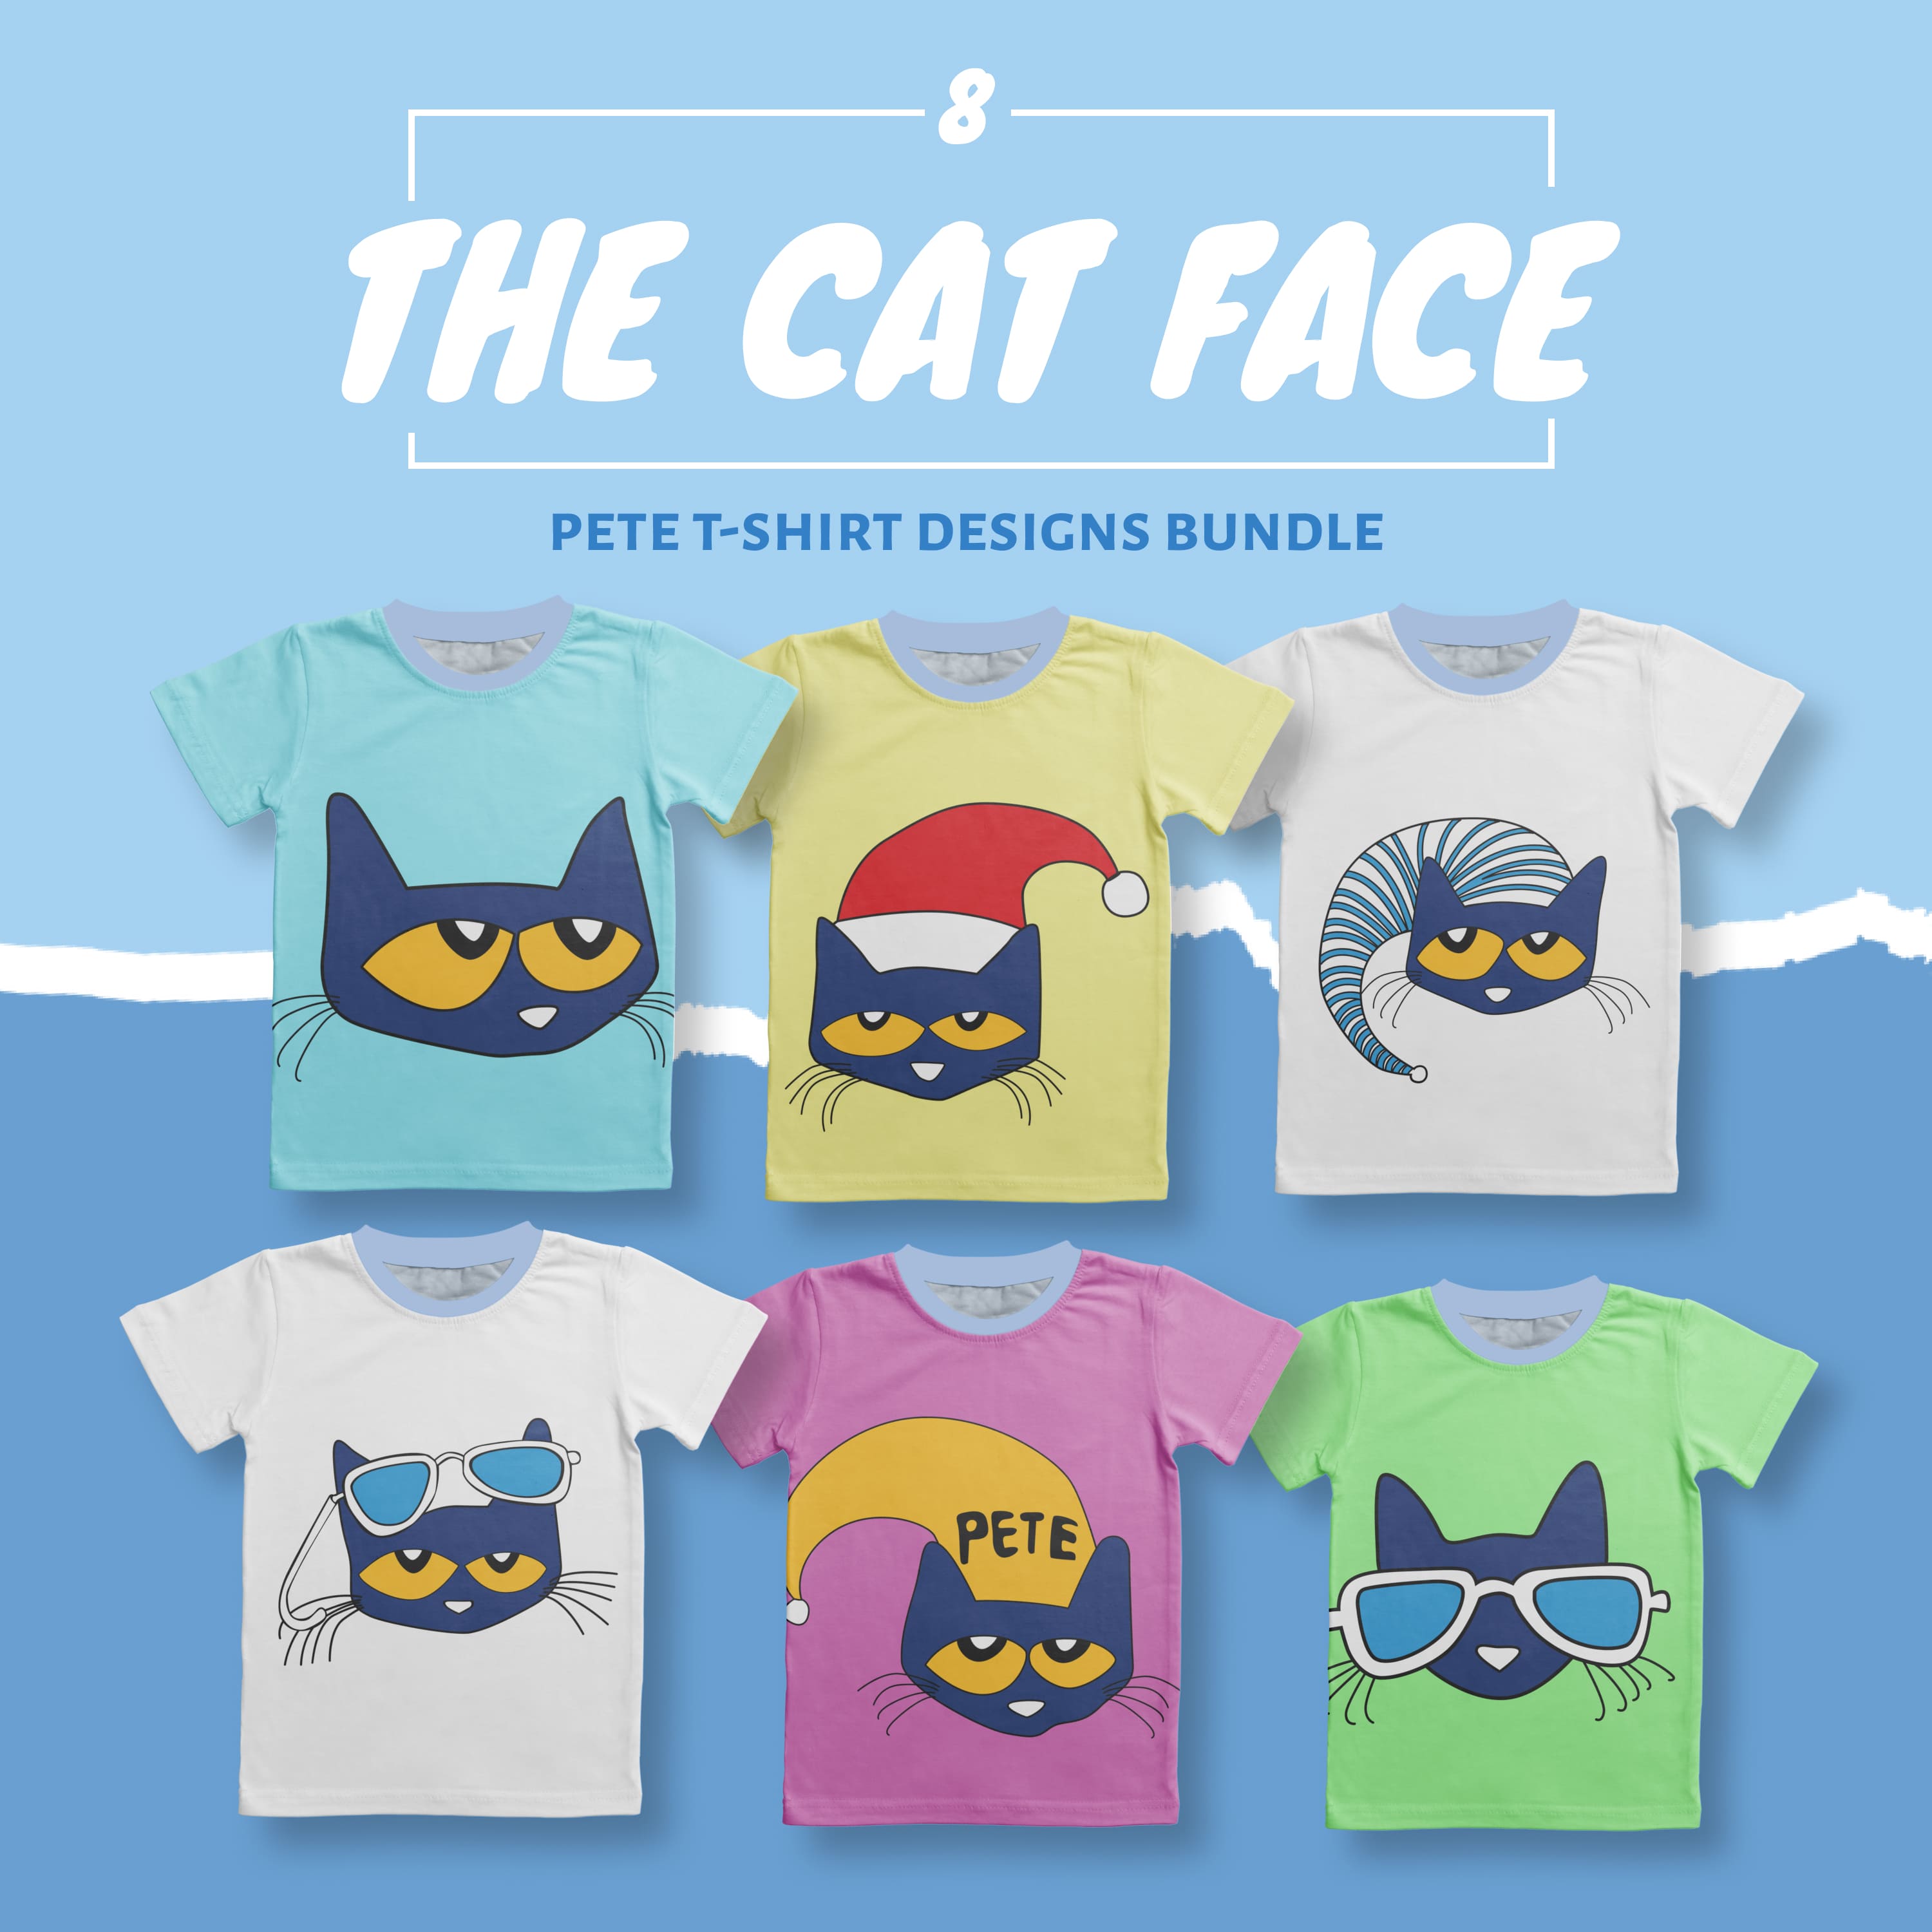 Pete The Cat Face T-shirt Designs Bundle.